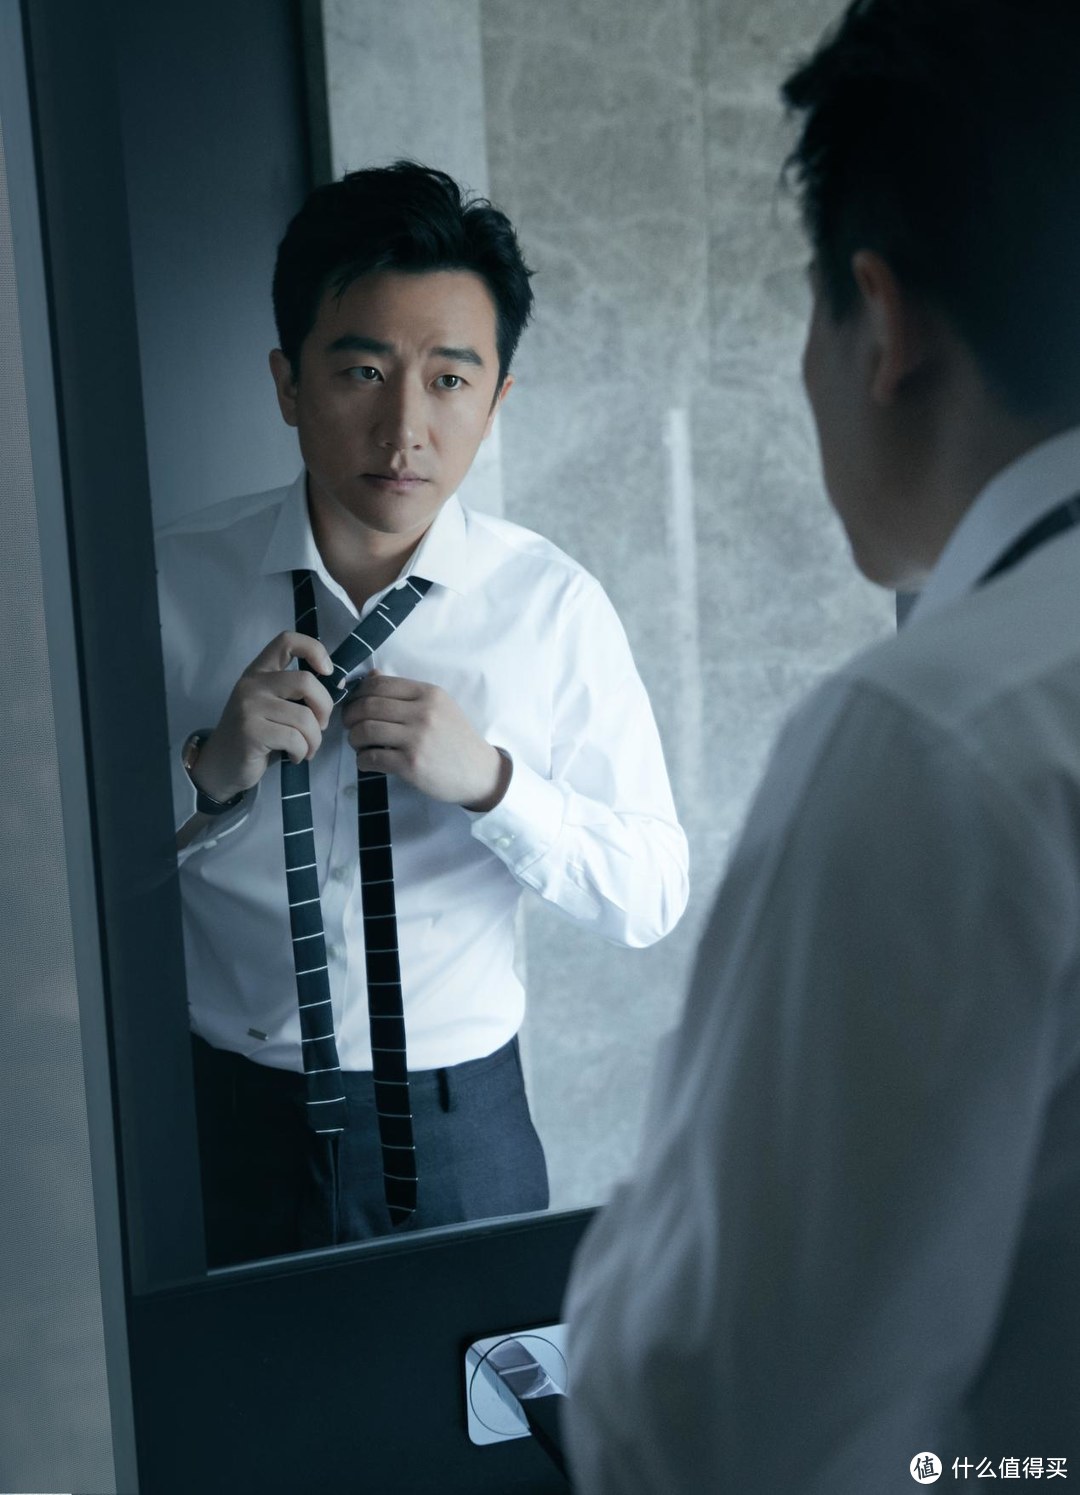 瑞士奢侈腕表品牌BLANCPAIN宝珀宣布演员黄轩出任品牌大使，并发布由其主演的全新广告大片《10:10》。 - 华丽通